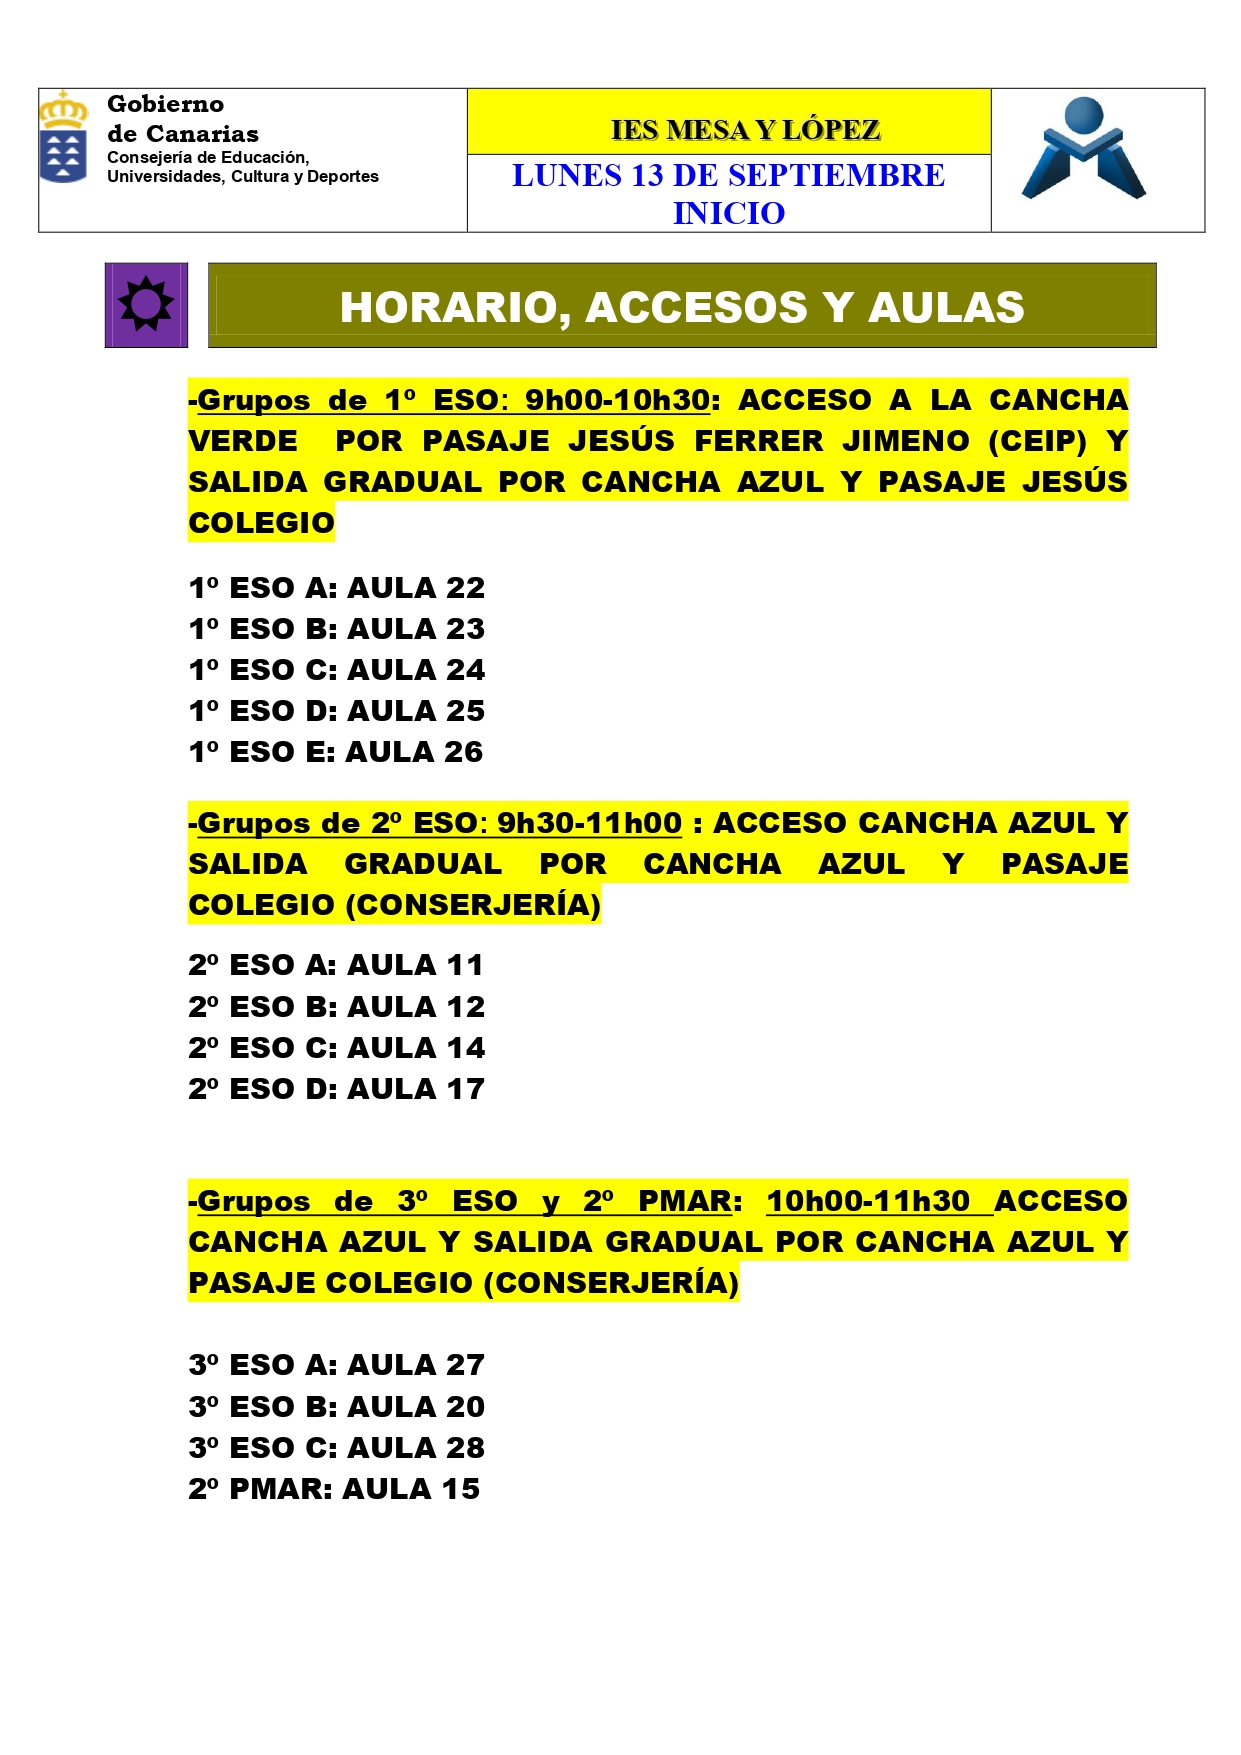 PRESENTACIONES E INICIO DE CLASES 13 SEPTIEMBRE page 0006